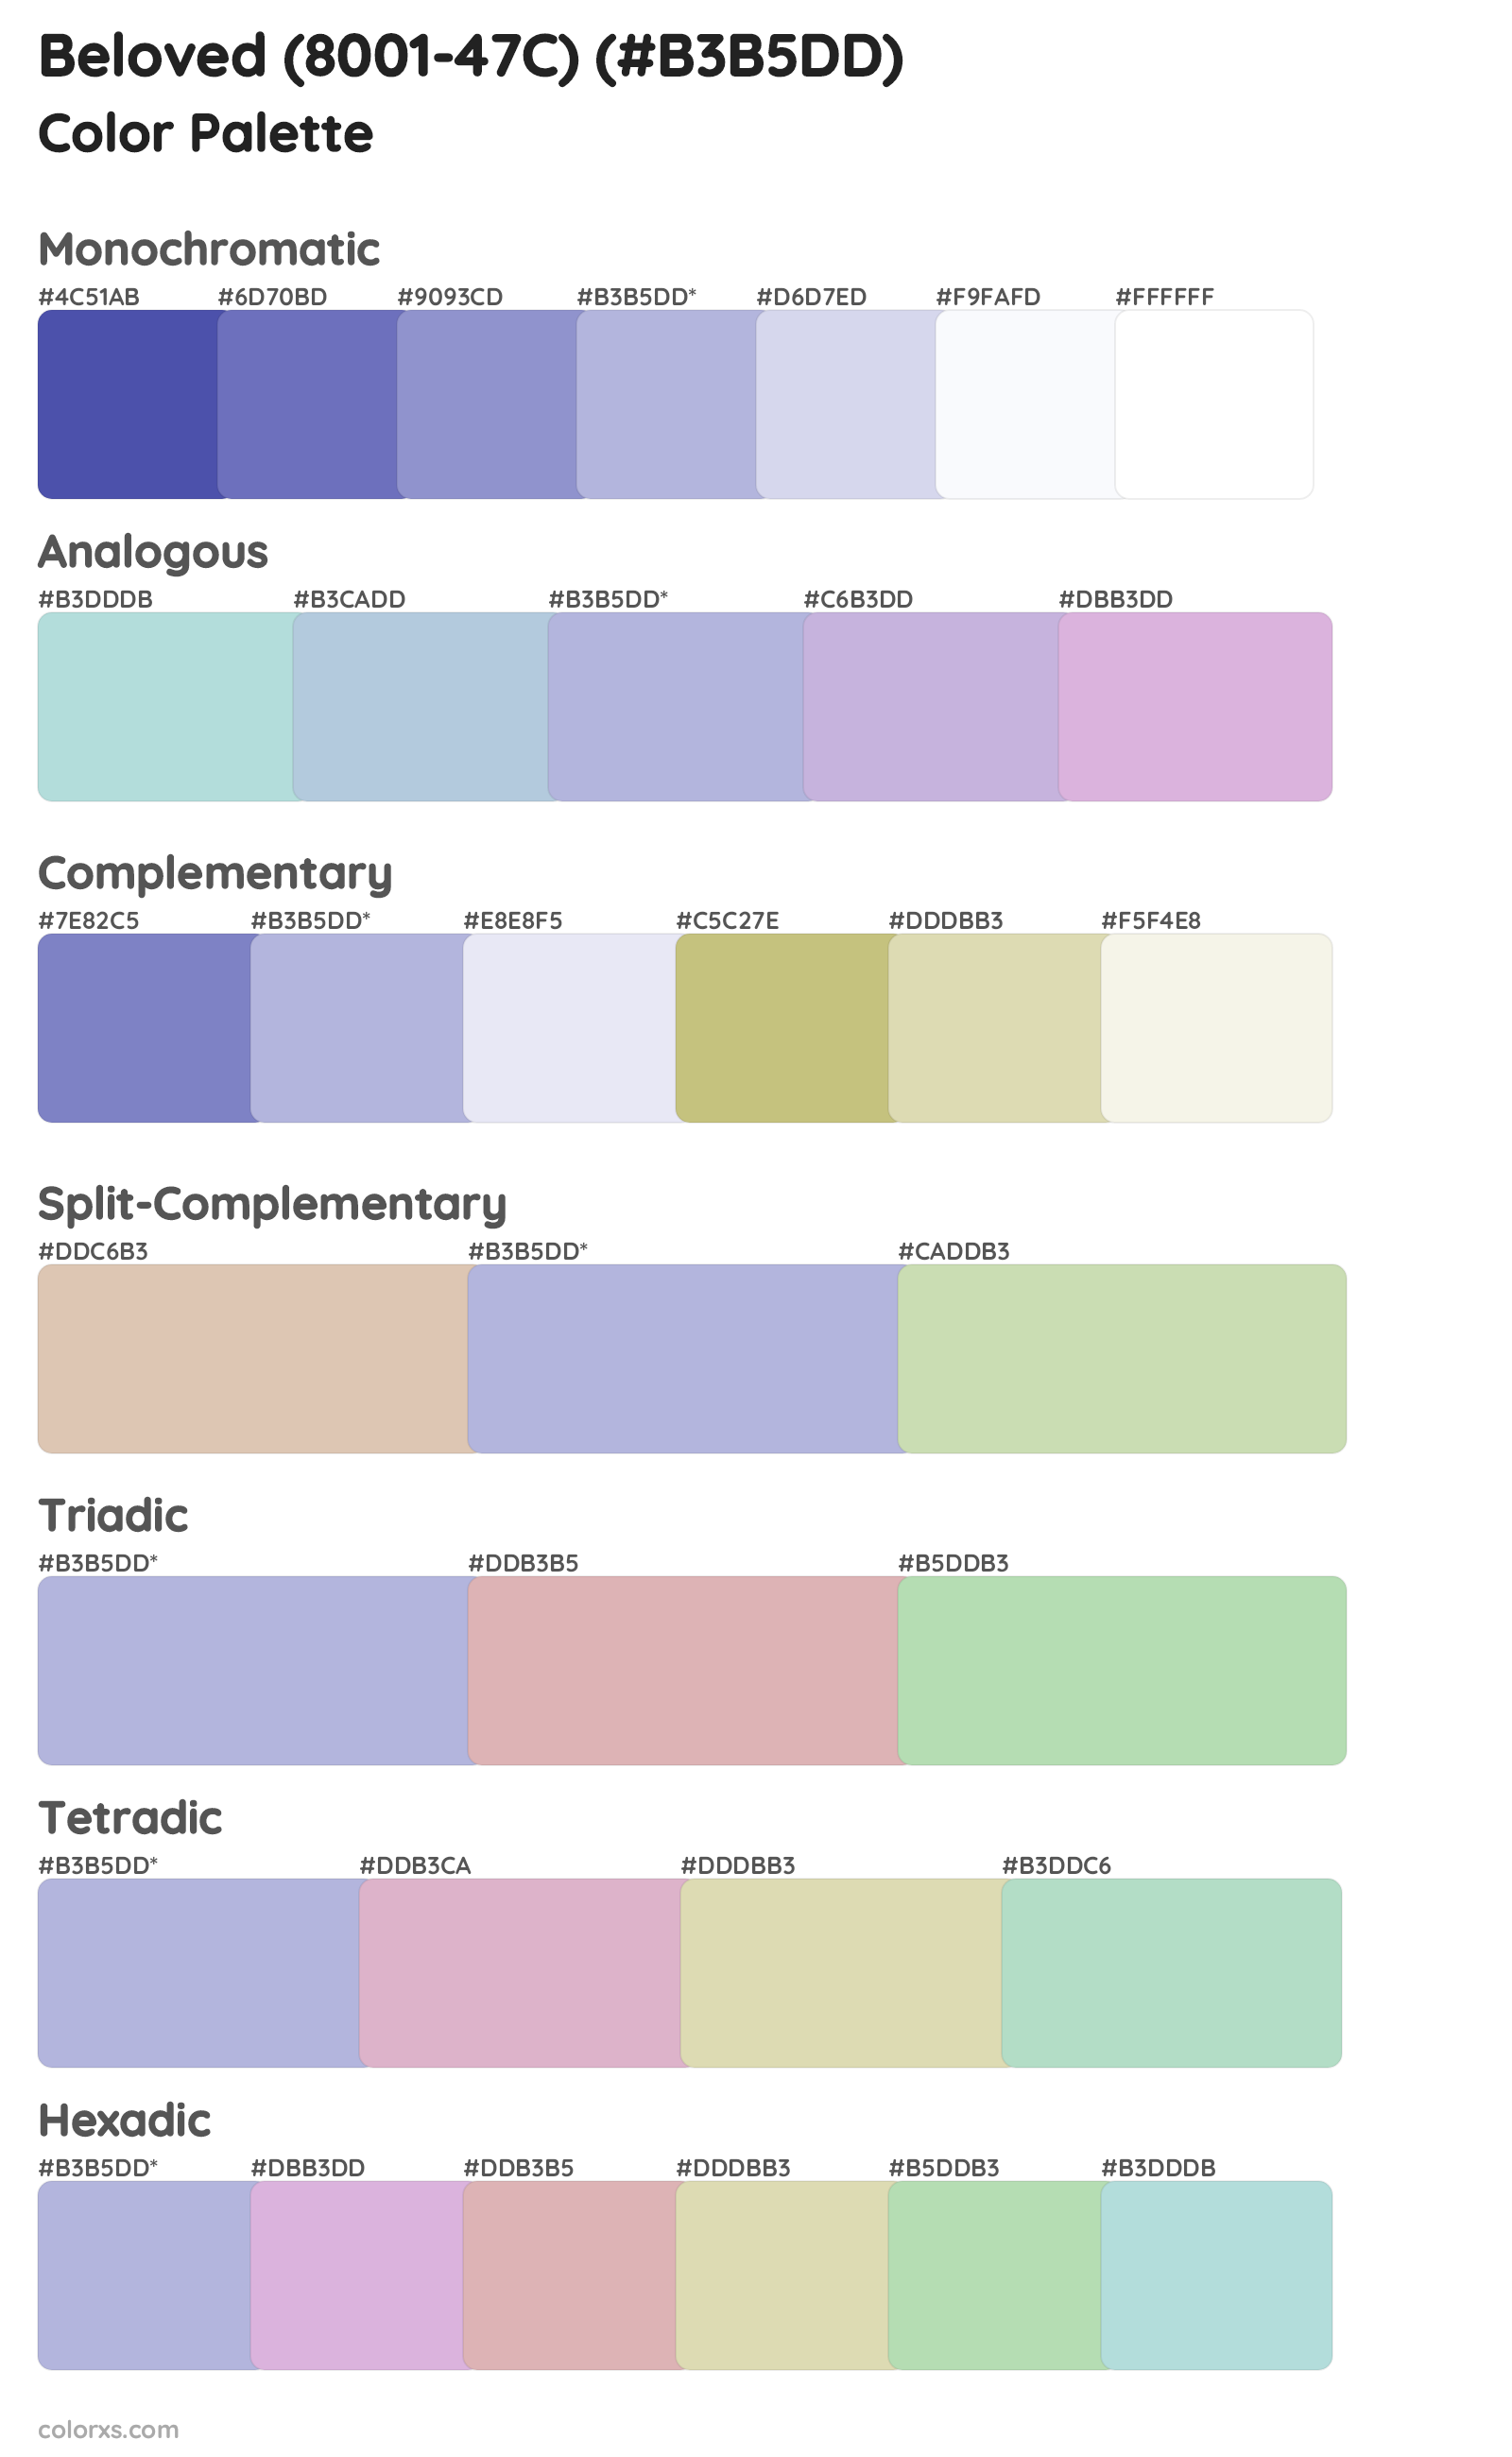 Beloved (8001-47C) Color Scheme Palettes